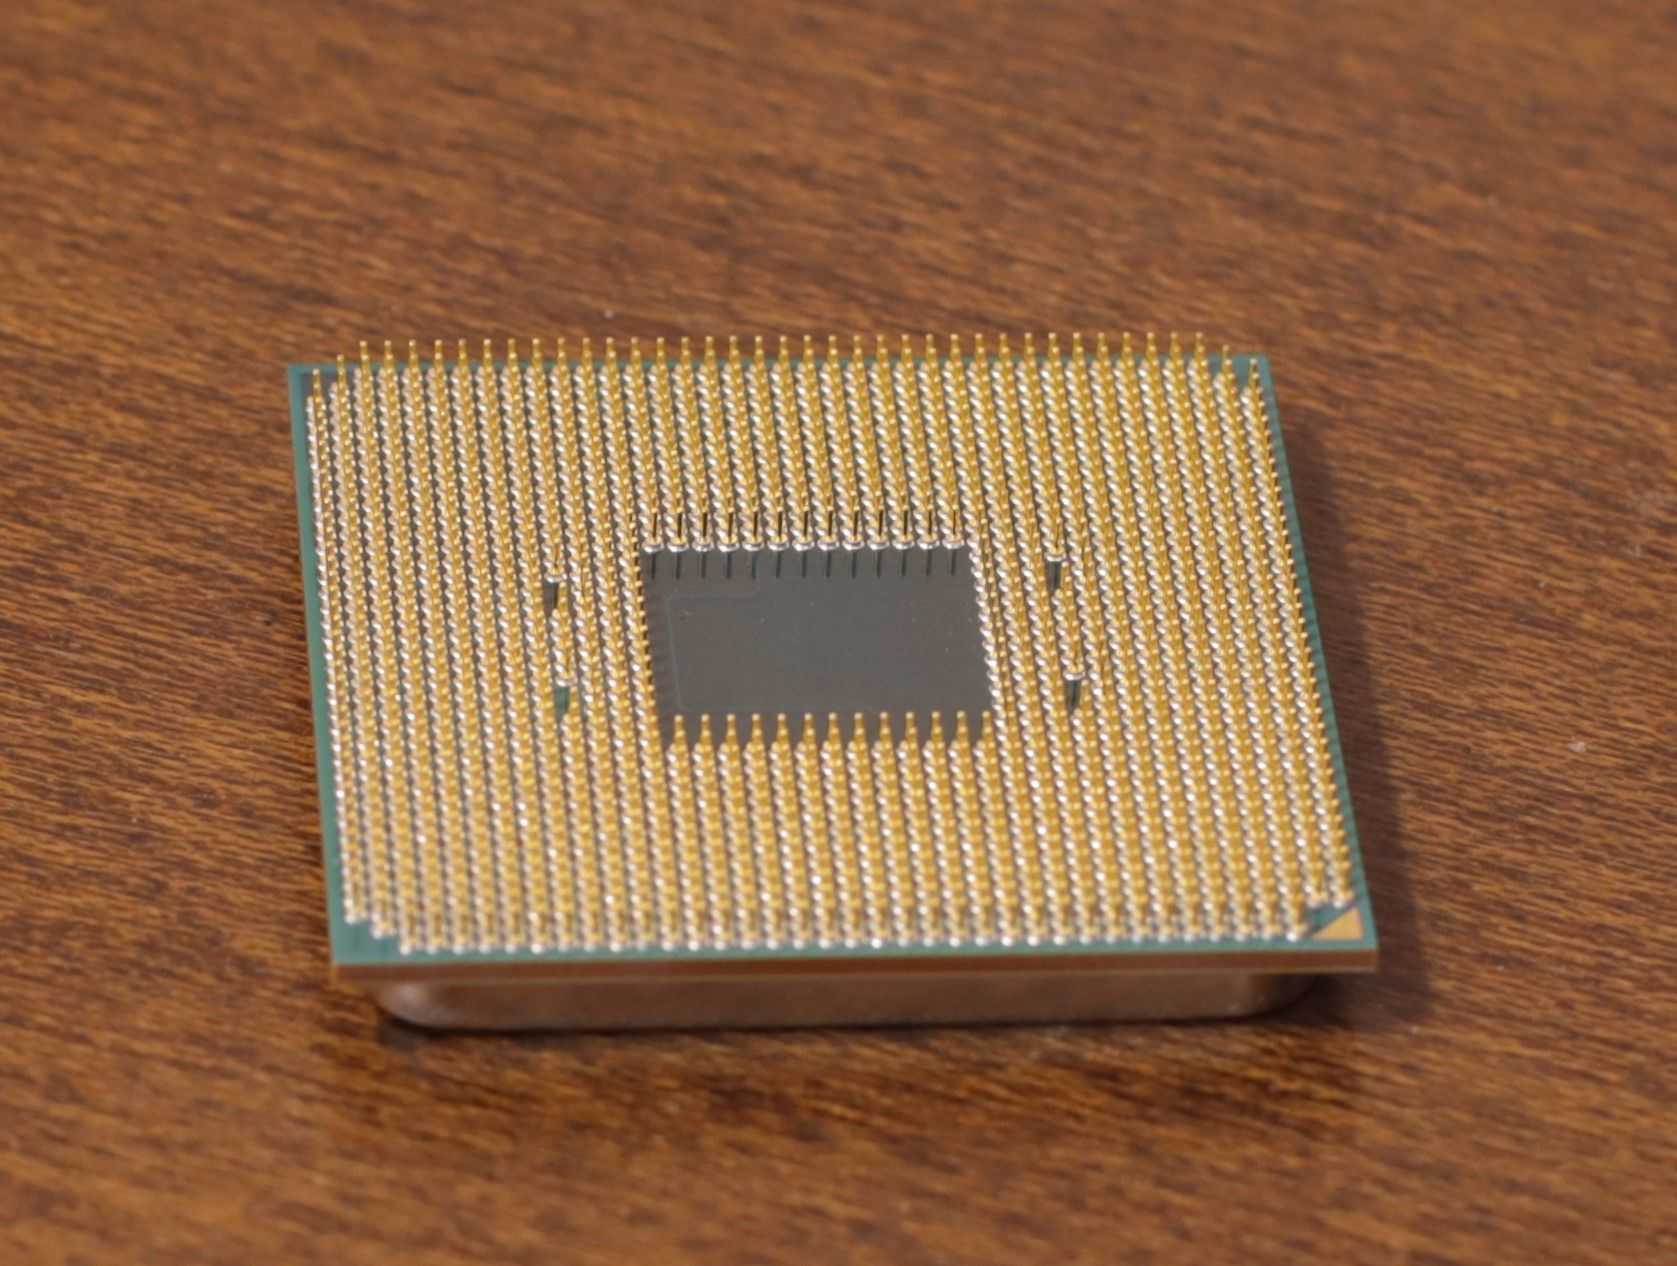 3 pro 3200g. AMD Ryzen 3 3200g. AMD Ryzen 3 Pro 3200g. Ryzen 3 Pro 3200g процессор. Процессор AMD Ryzen 3 3200g am4.